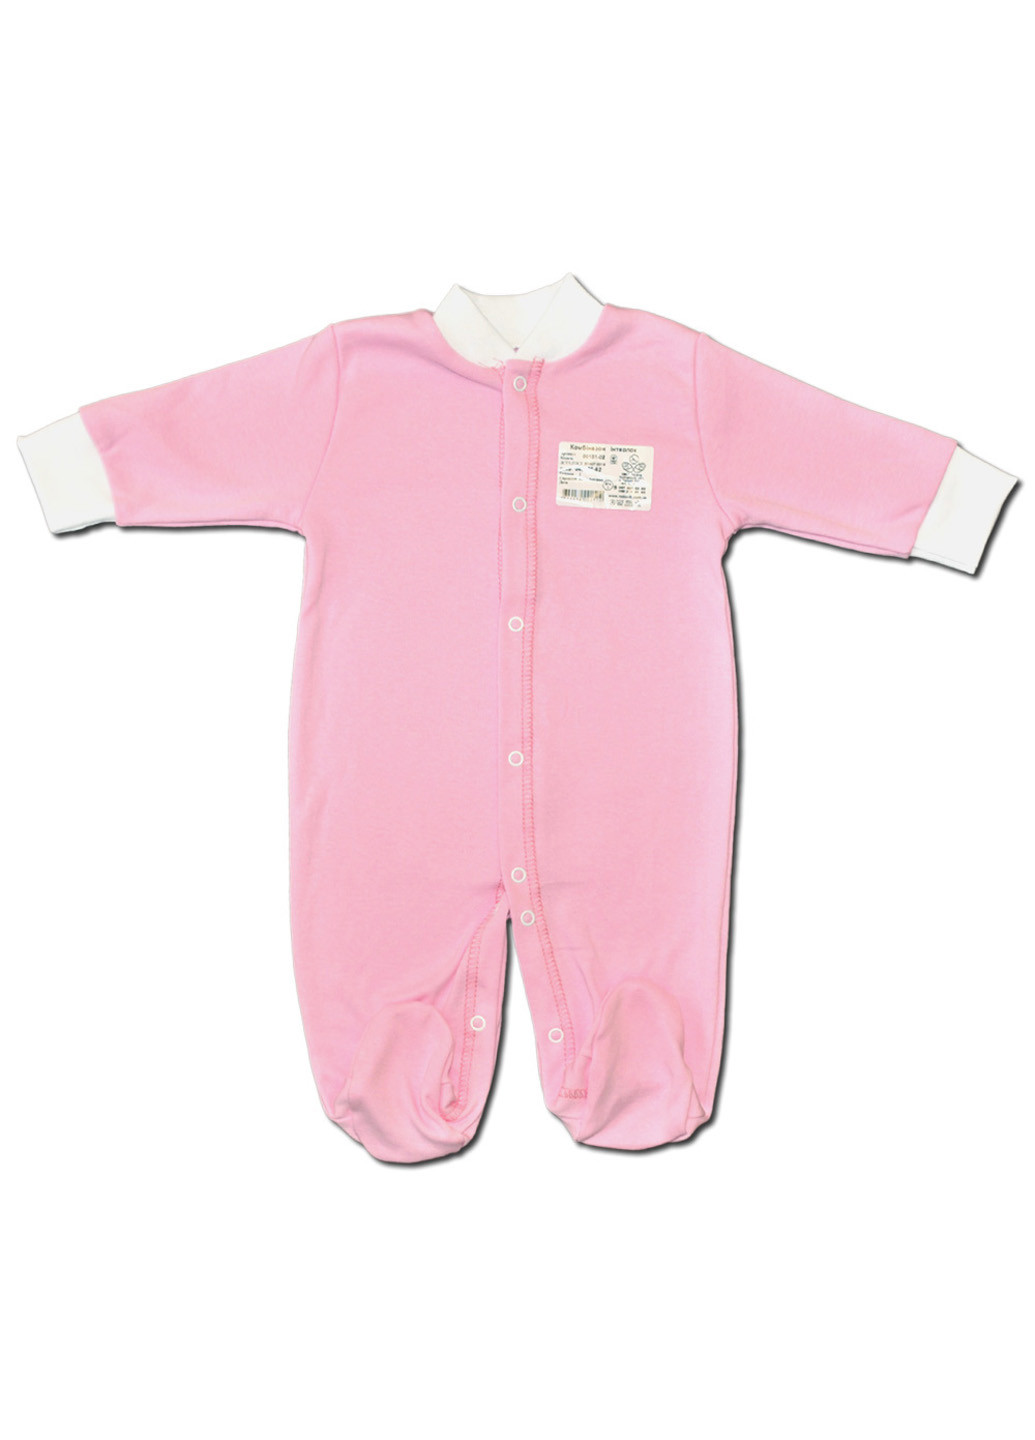 Рожевий демісезонний комплект для новонароджених no7 (5 предметів) тм колекція капітошка рожевий Родовик комплект 07-РК